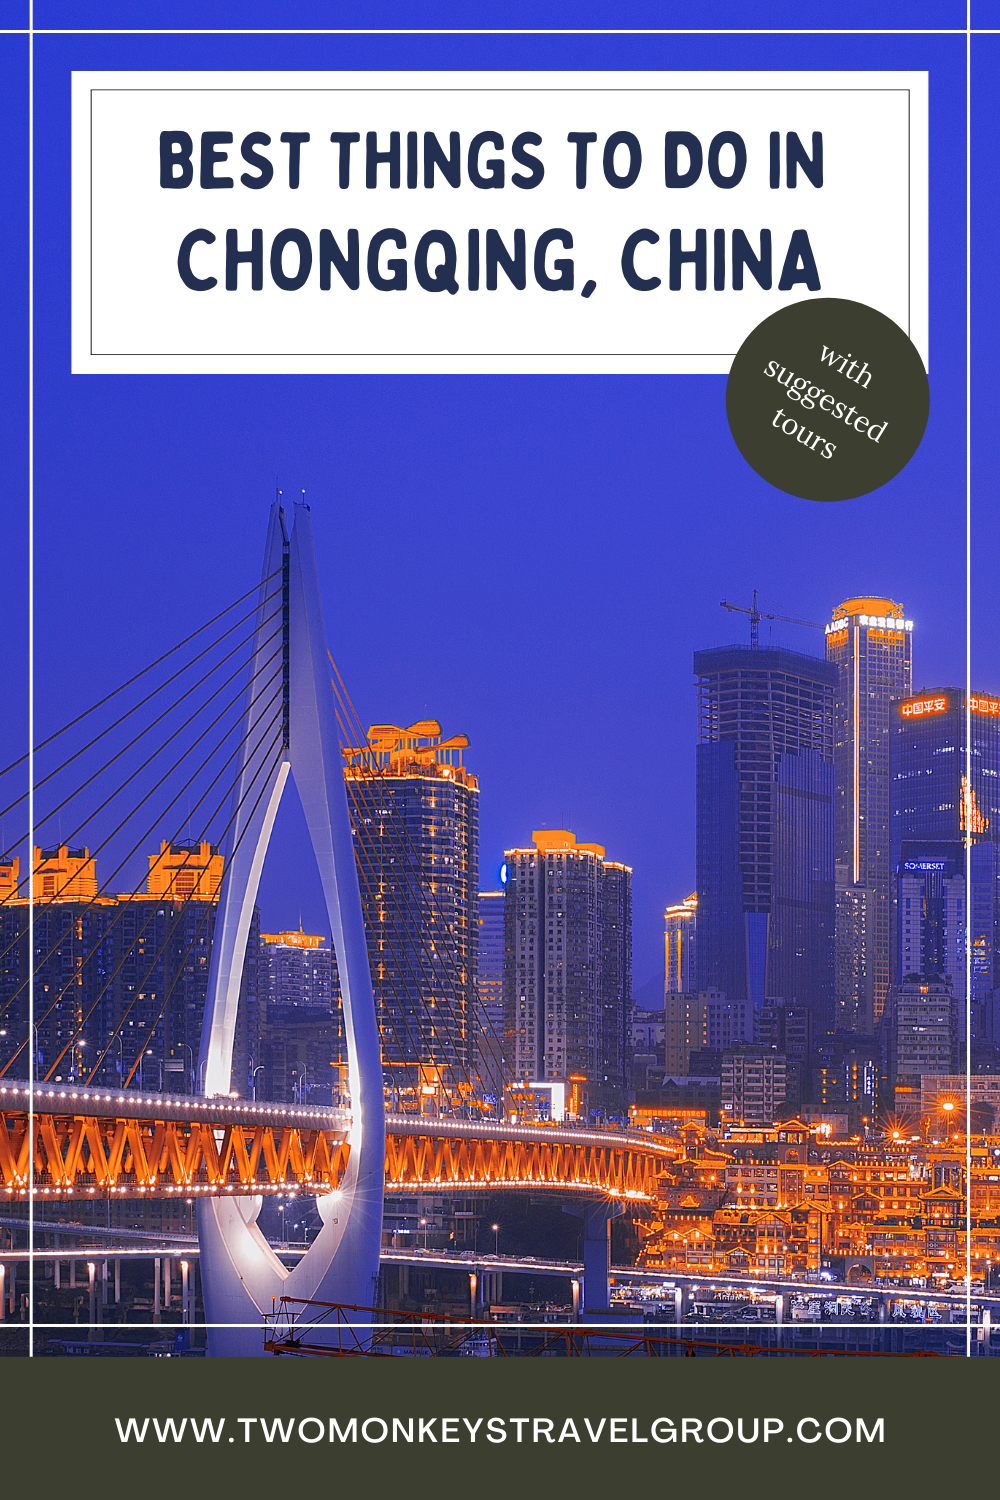 Top 5 things to do in Chongqing China 1